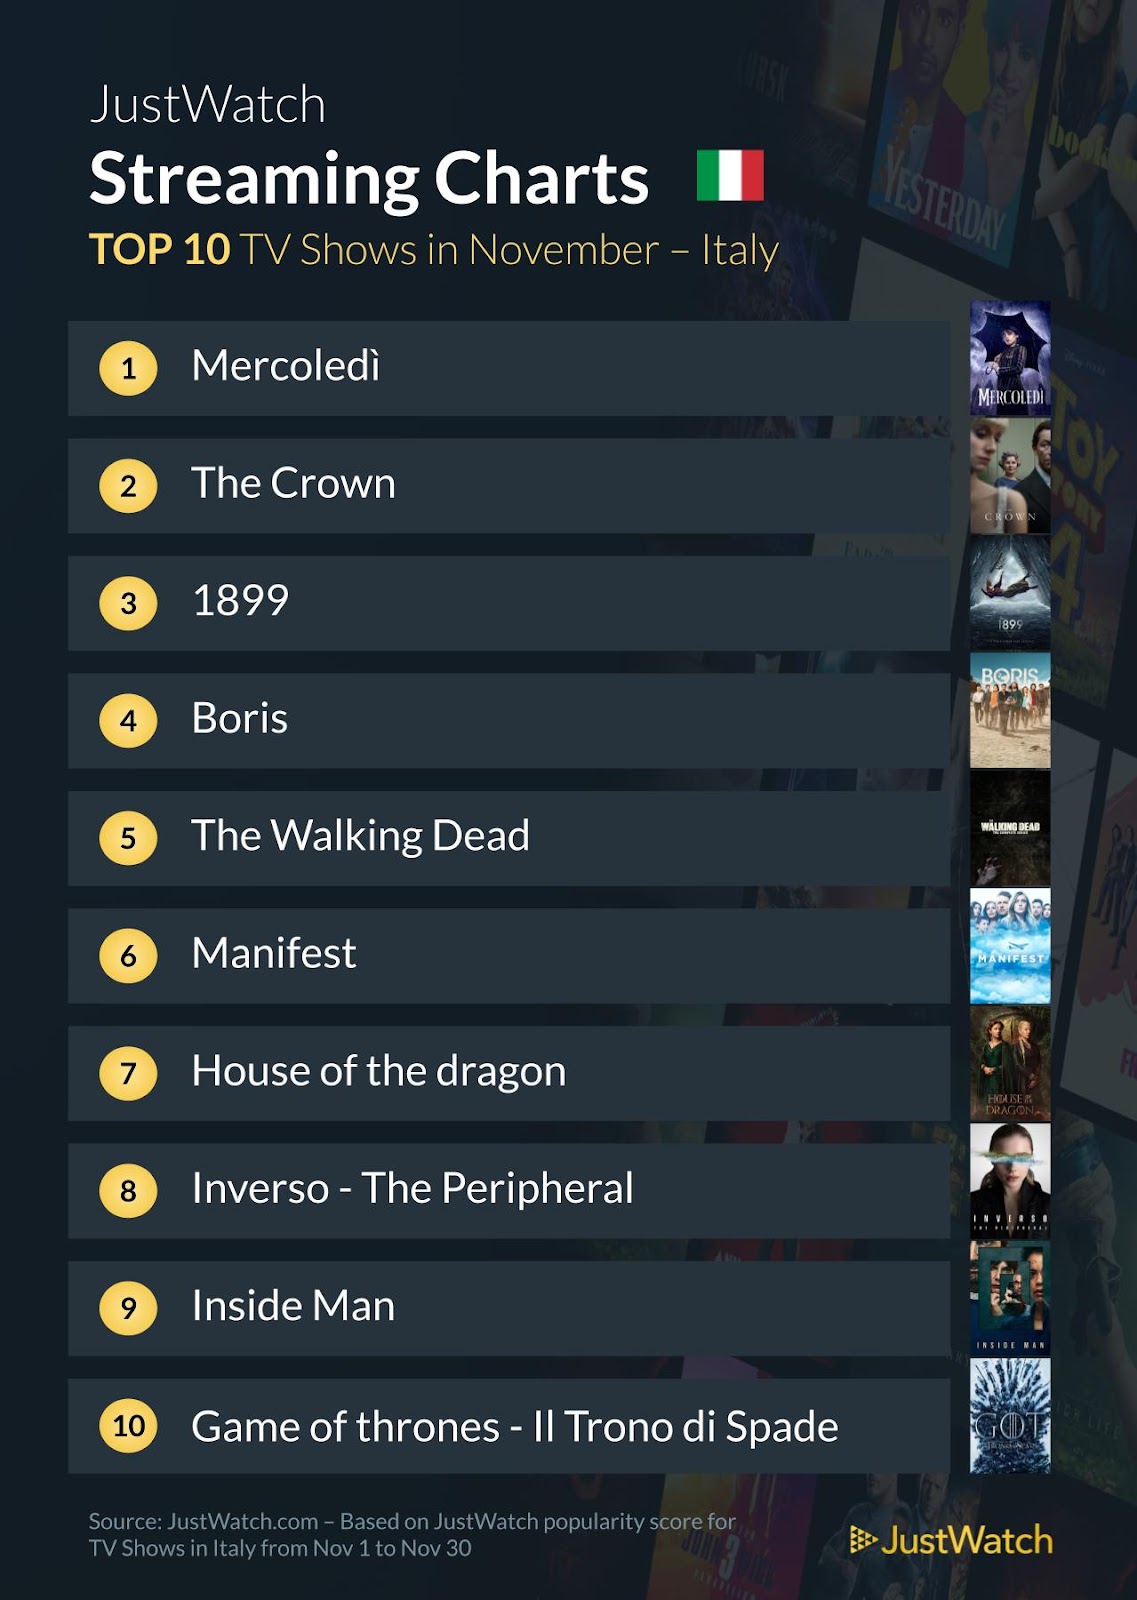 Classifica top 10 film e serie TV di Novembre secondo JustWatch